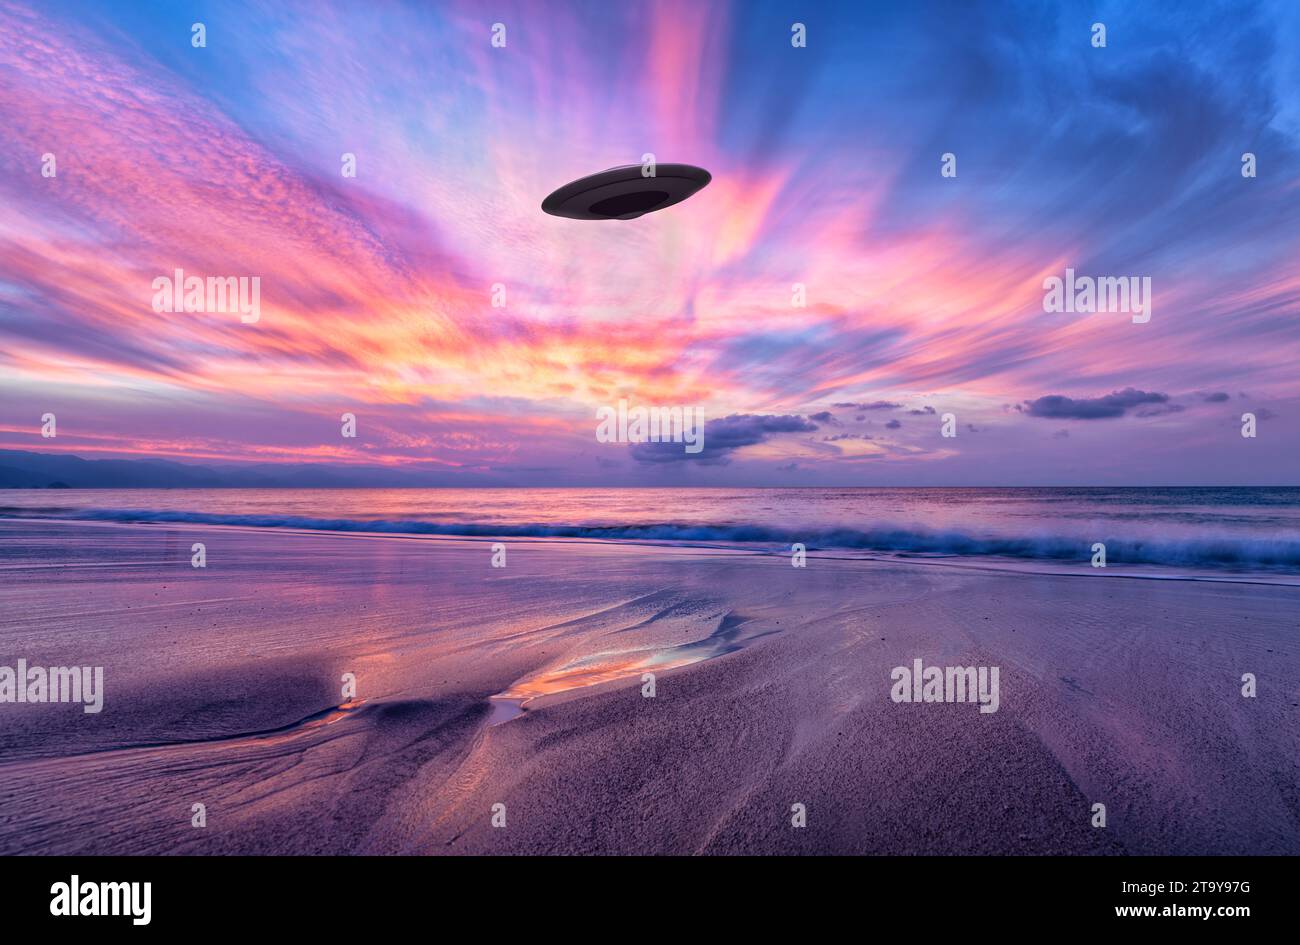 Eine unbekannte Flying Object Untertasse schwebt in Einem surrealen Himmel am Strand Stockfoto